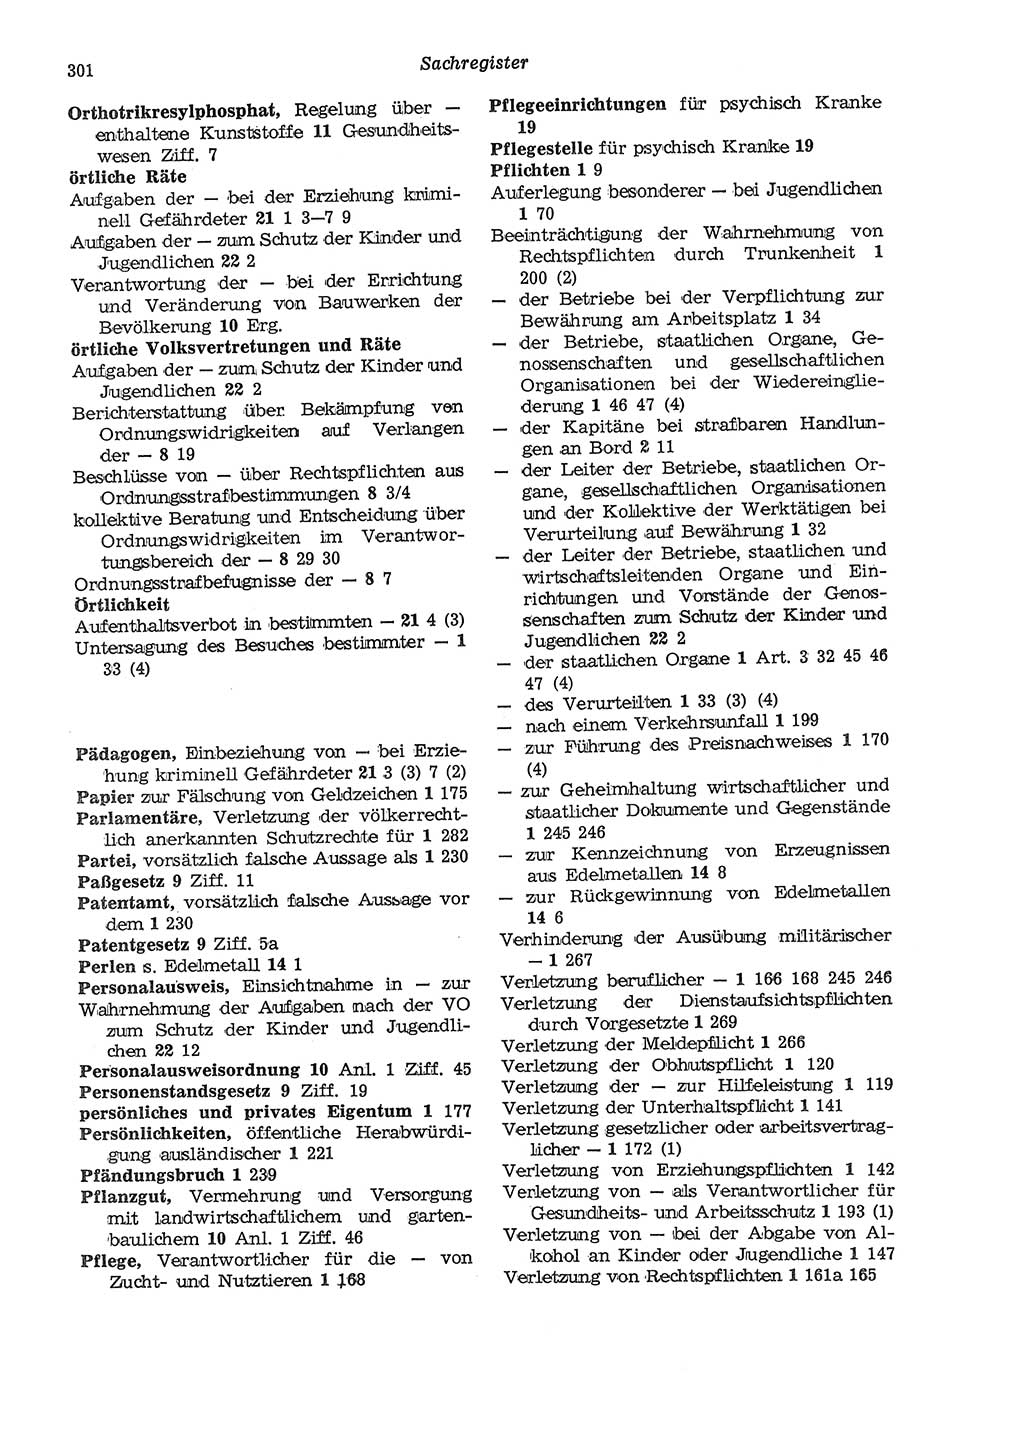 Strafgesetzbuch (StGB) der Deutschen Demokratischen Republik (DDR) und angrenzende Gesetze und Bestimmungen 1975, Seite 301 (StGB DDR Ges. Best. 1975, S. 301)